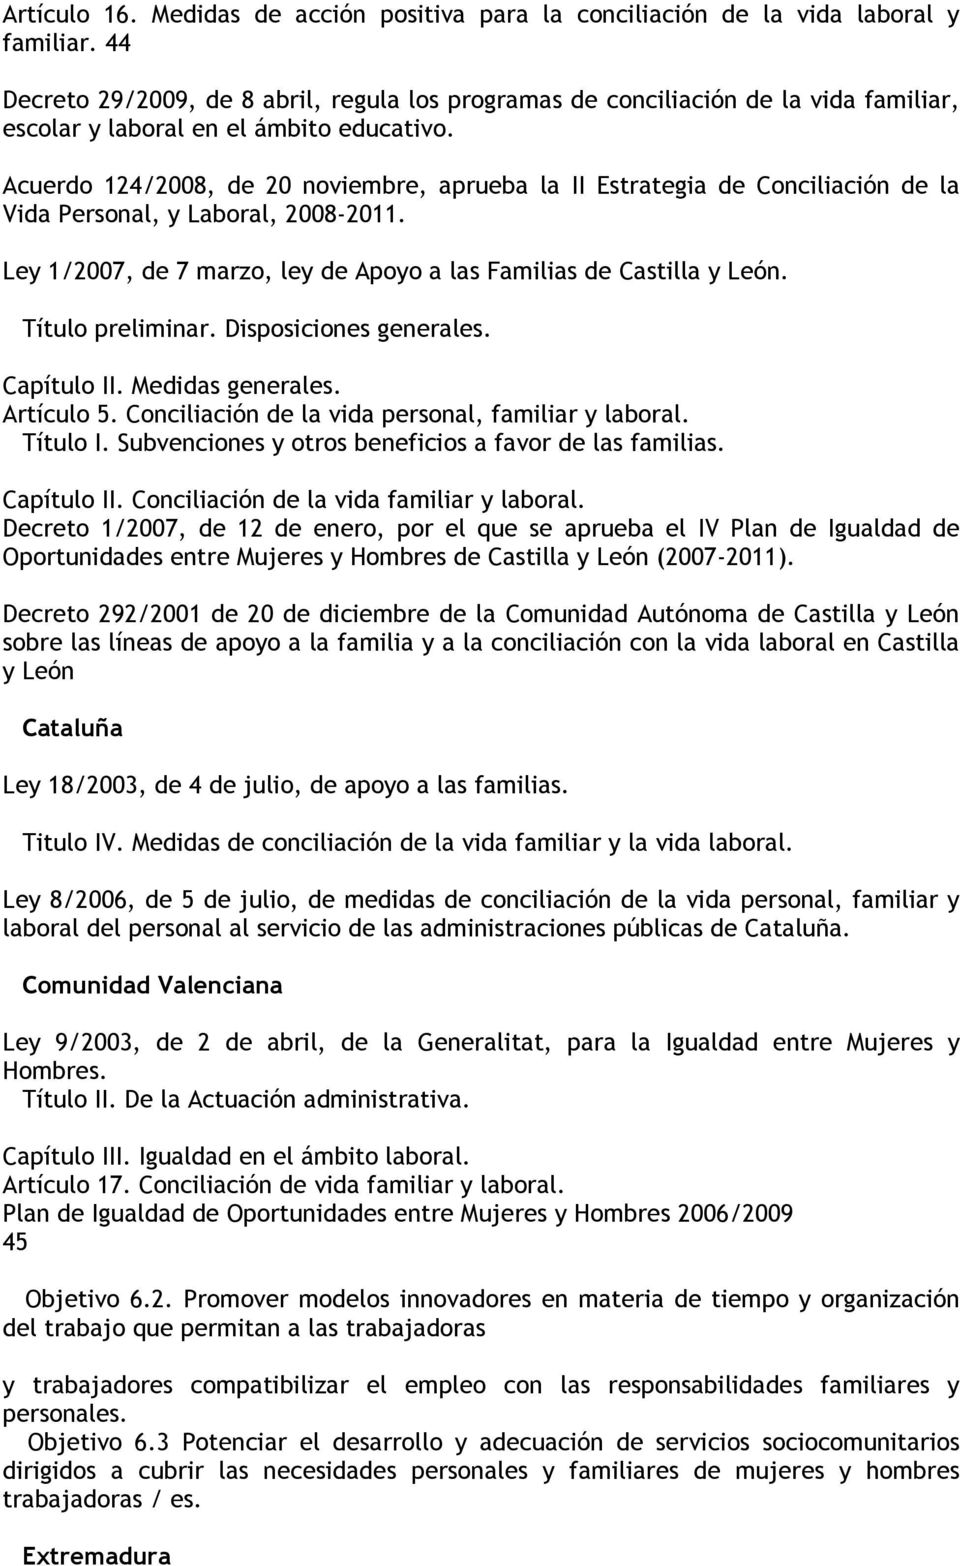 Acuerdo 124/2008, de 20 noviembre, aprueba la II Estrategia de Conciliación de la Vida Personal, y Laboral, 2008-2011. Ley 1/2007, de 7 marzo, ley de Apoyo a las Familias de Castilla y León.